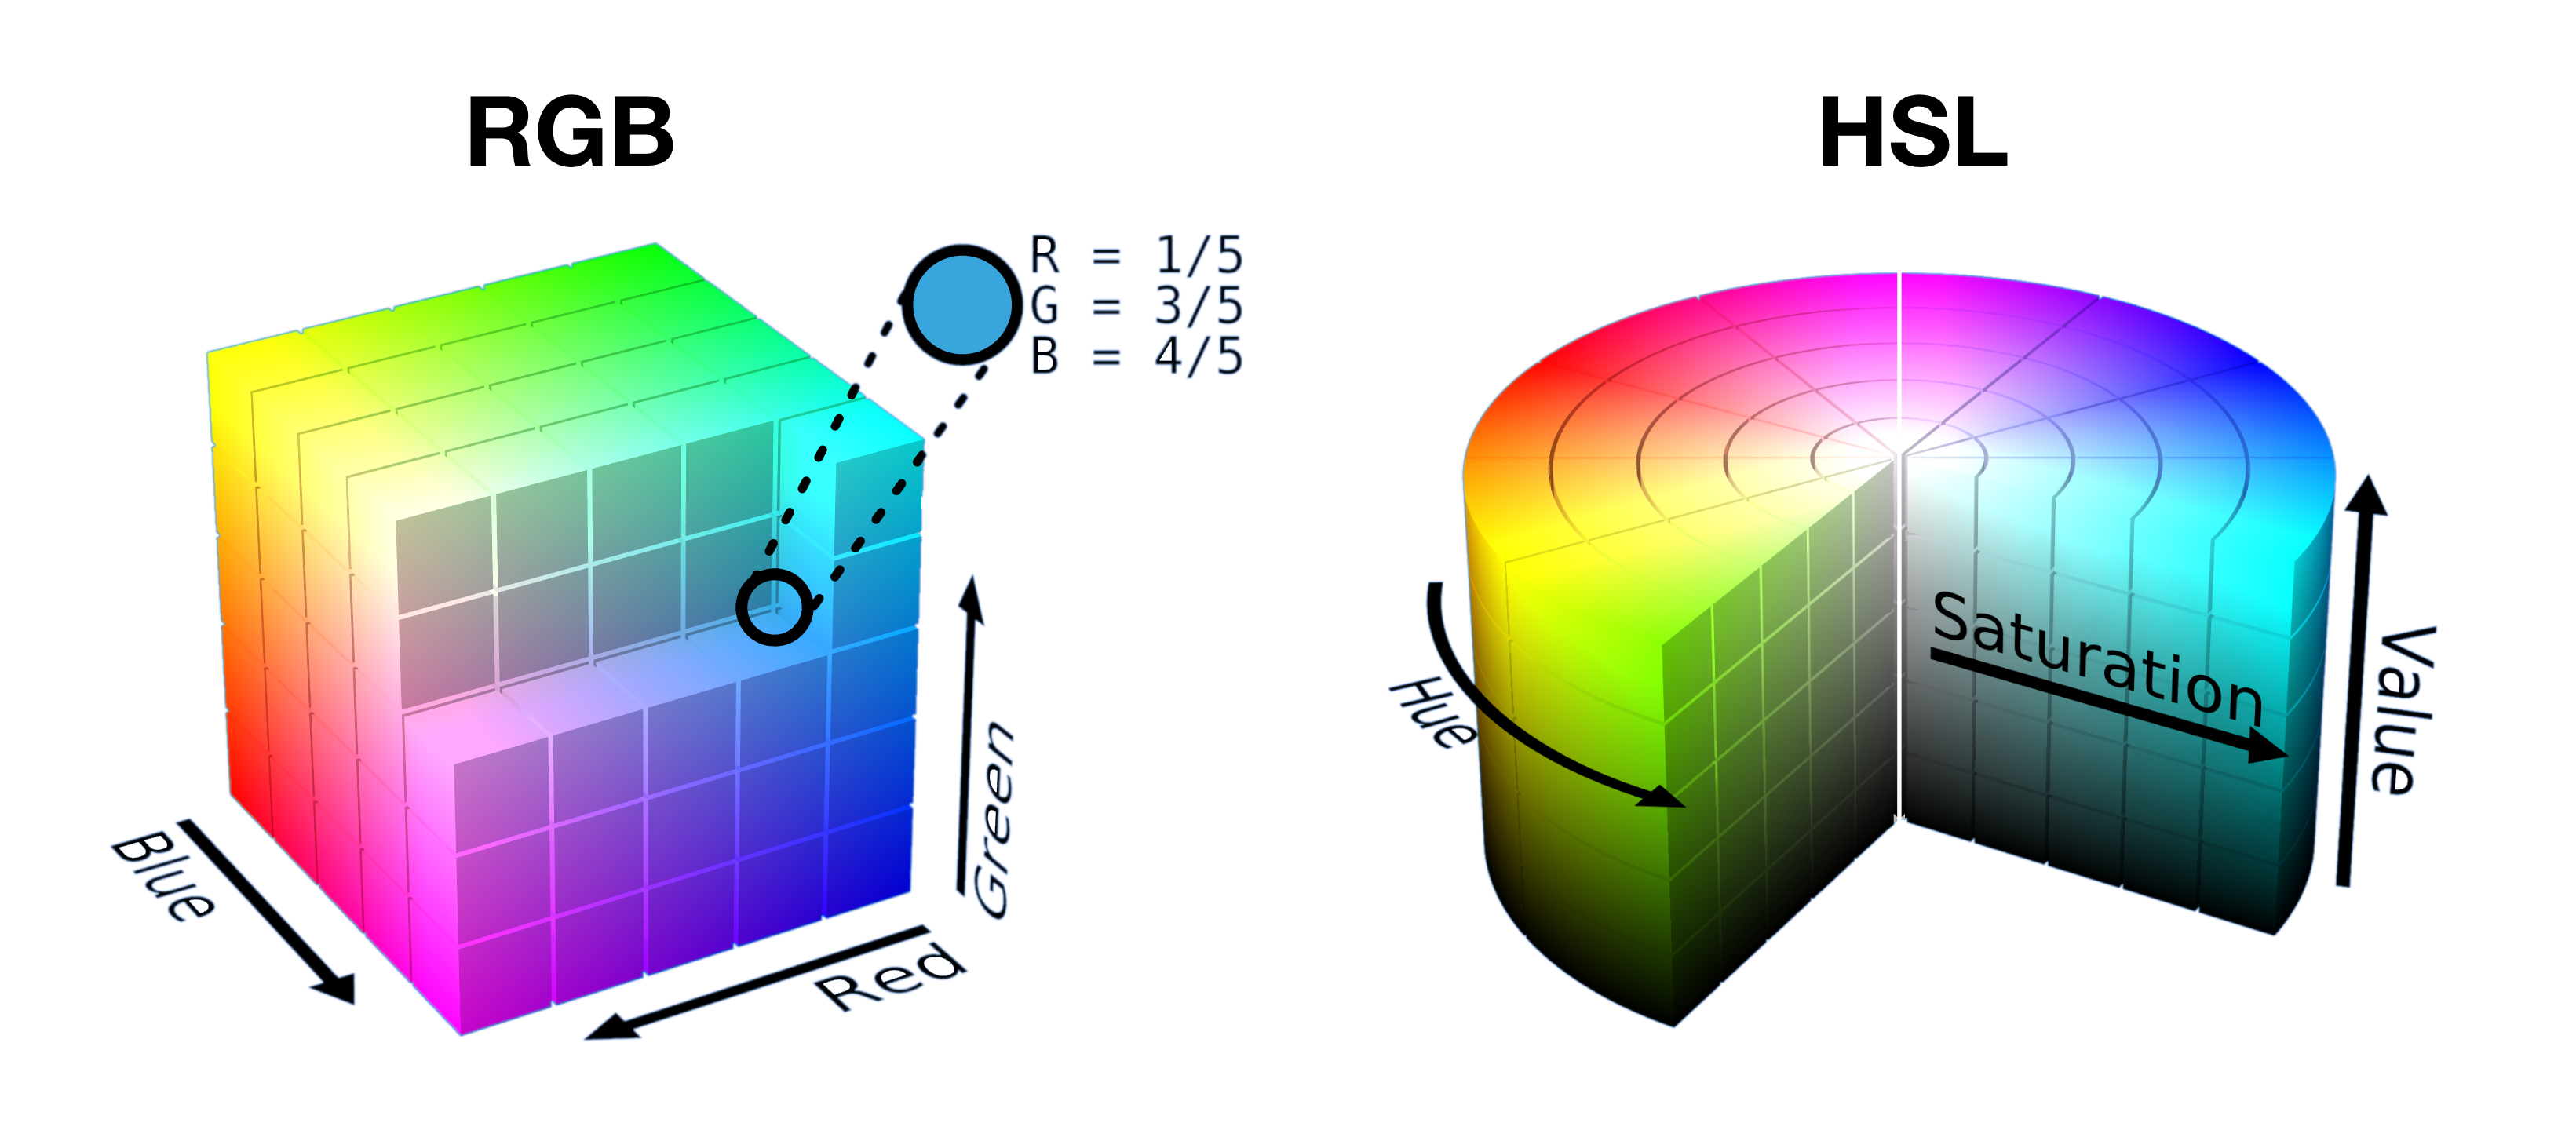 Половина разрезанного куба RGB и фрагменты цилиндра HSL показаны рядом, чтобы показать, как цвета упакованы в форму в каждом пространстве.